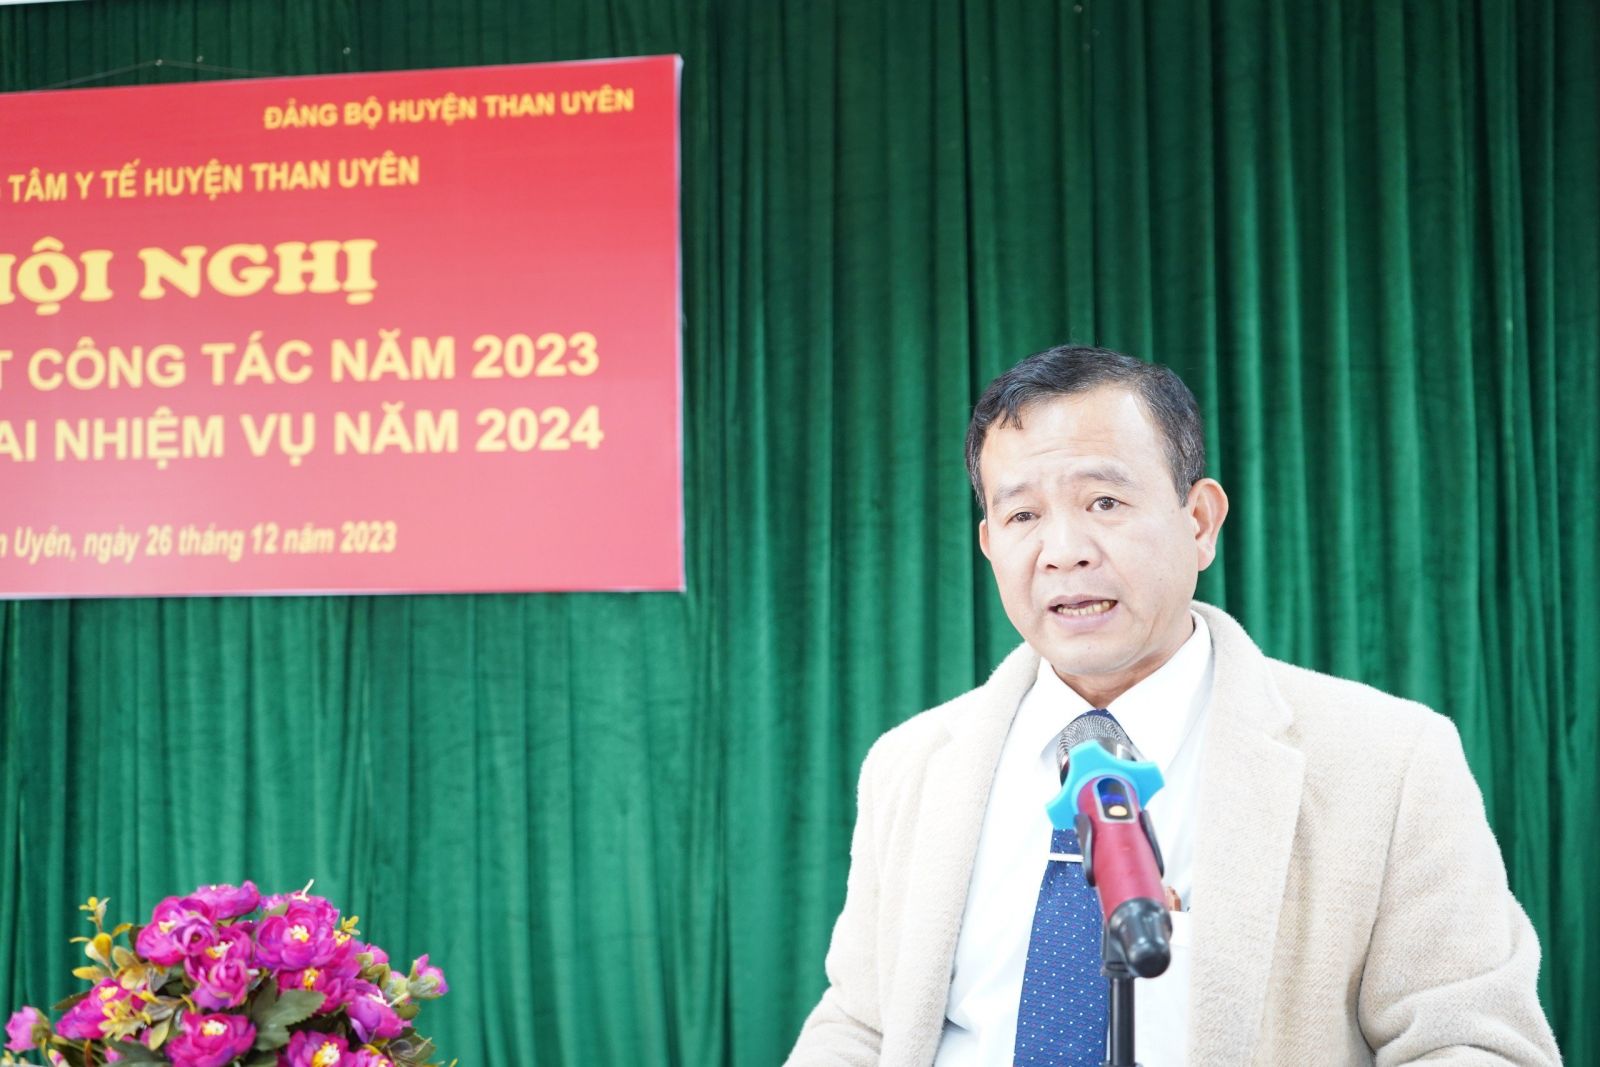 BSCKI. Vũ Văn Quang - Giám đốc Trung tâm Y tế Than Uyên báo cáo kết quả hoạt động của đơn vị